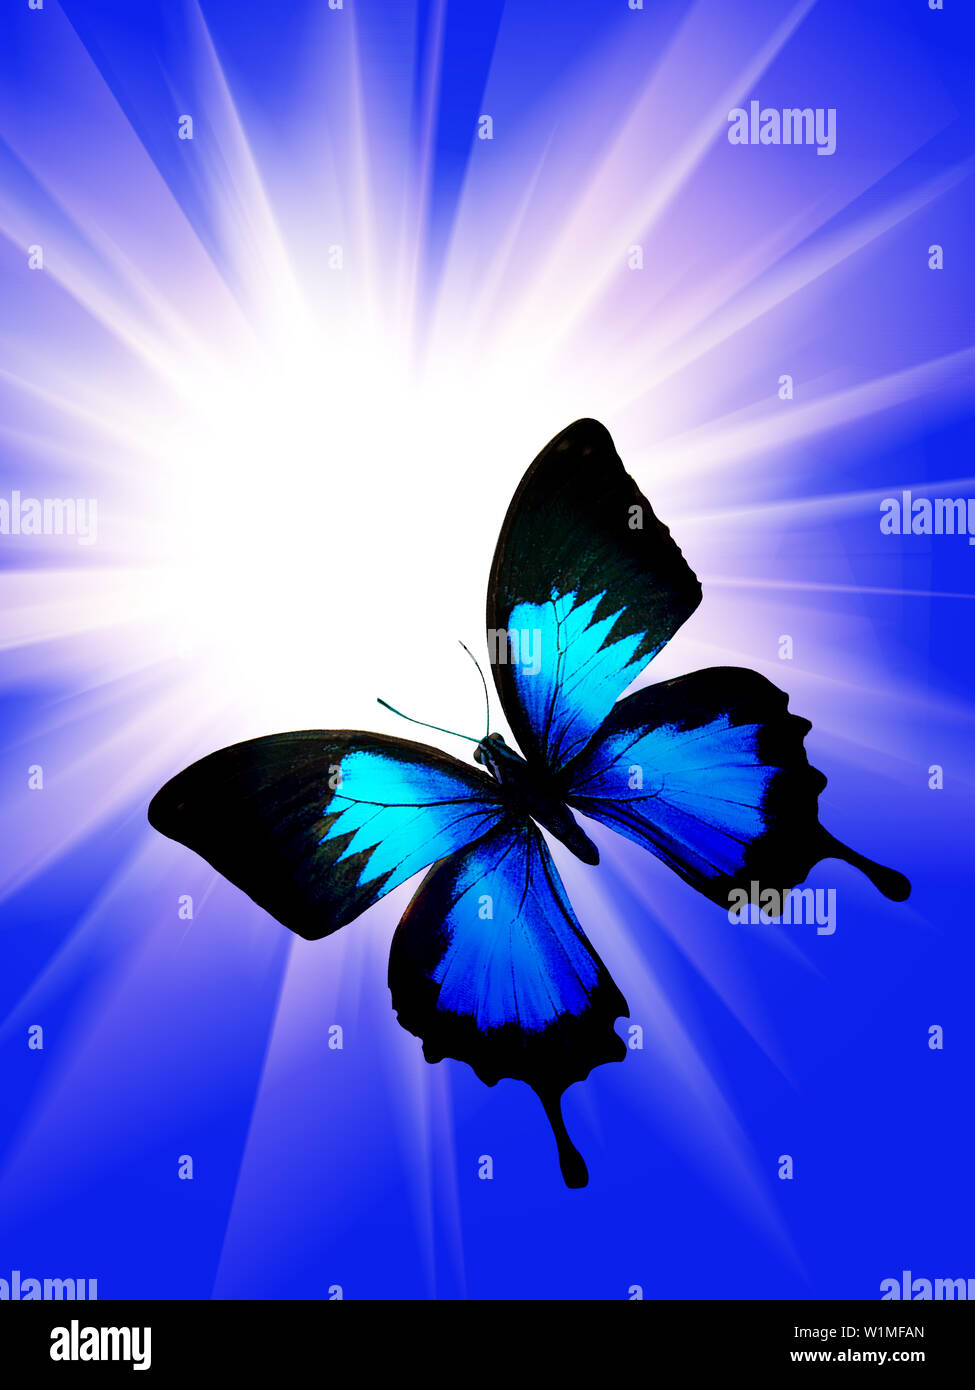 Bướm xanh bay: Quả thật, bướm luôn là biểu tượng sự nở rộ và sự phấn khích của cuộc sống. Cùng ngắm nhìn hình ảnh bướm xanh bay, vẻ đẹp ấy sẽ khiến bạn nhớ đến những khoảnh khắc đáng yêu nhất của cuộc đời.